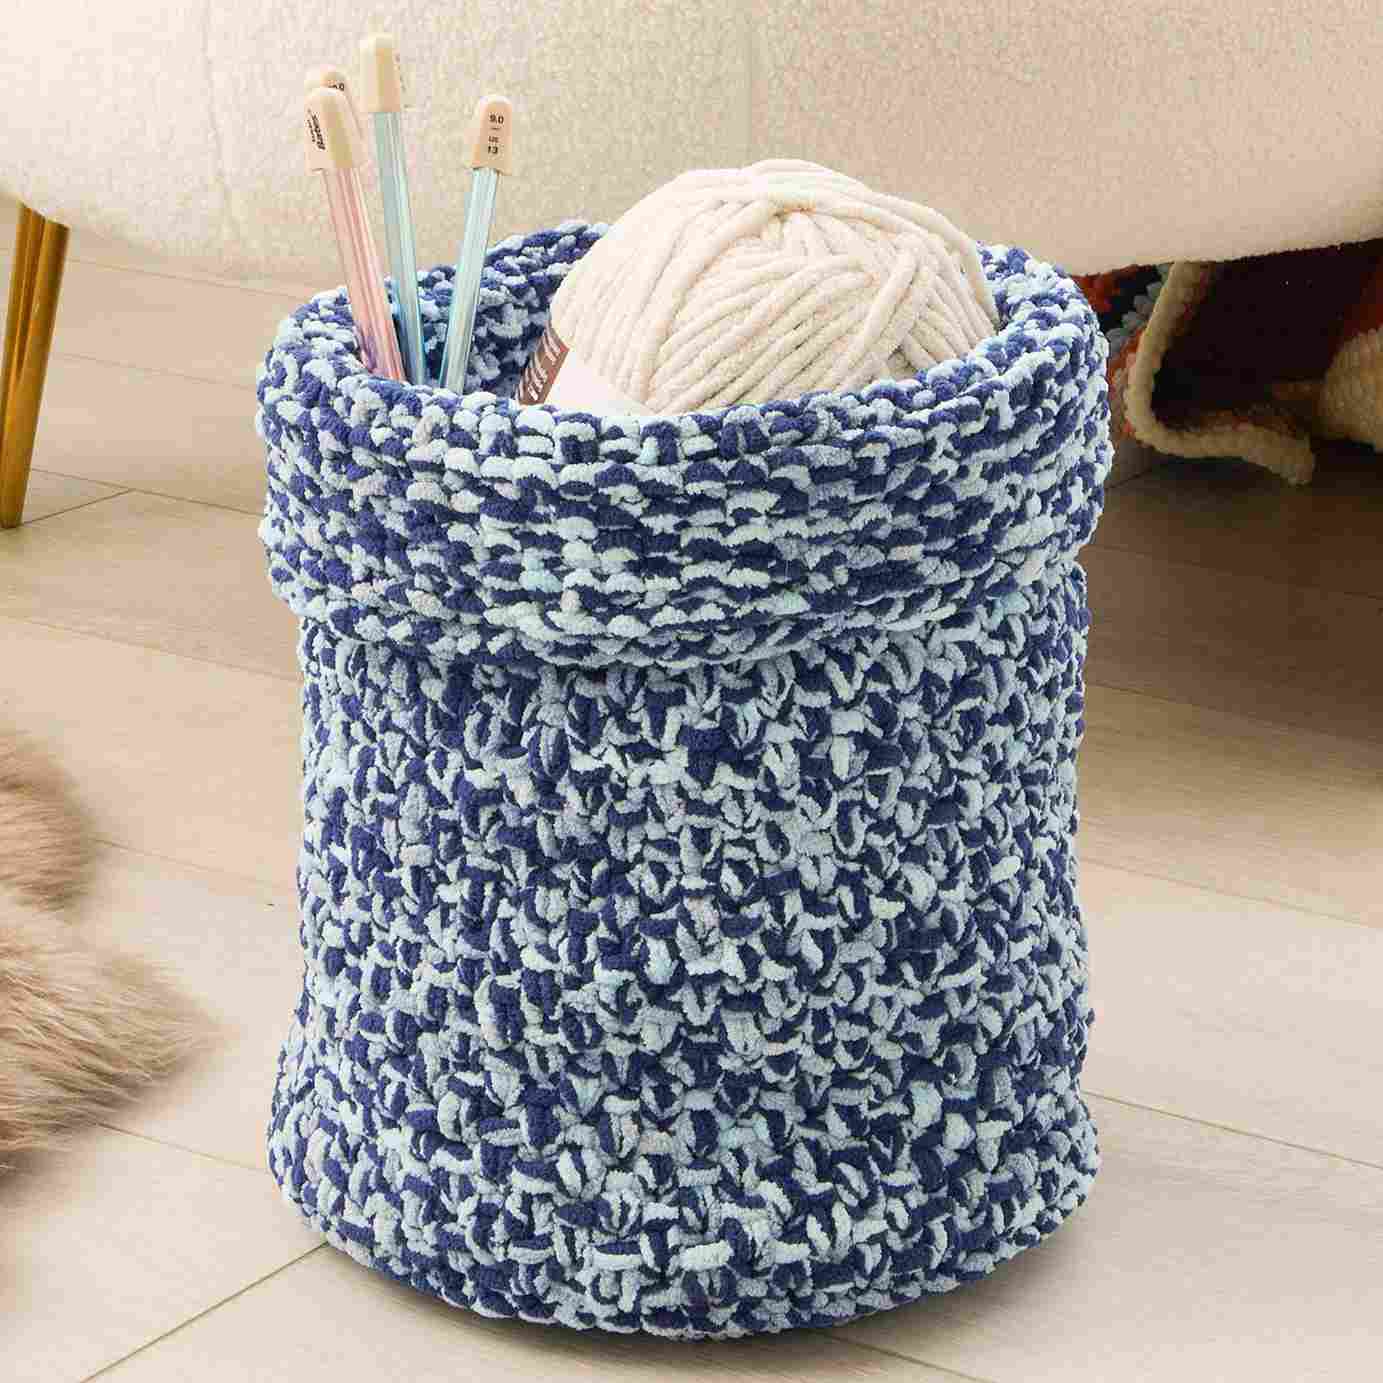 Textured Knit Basket - Free Knitting Pattern